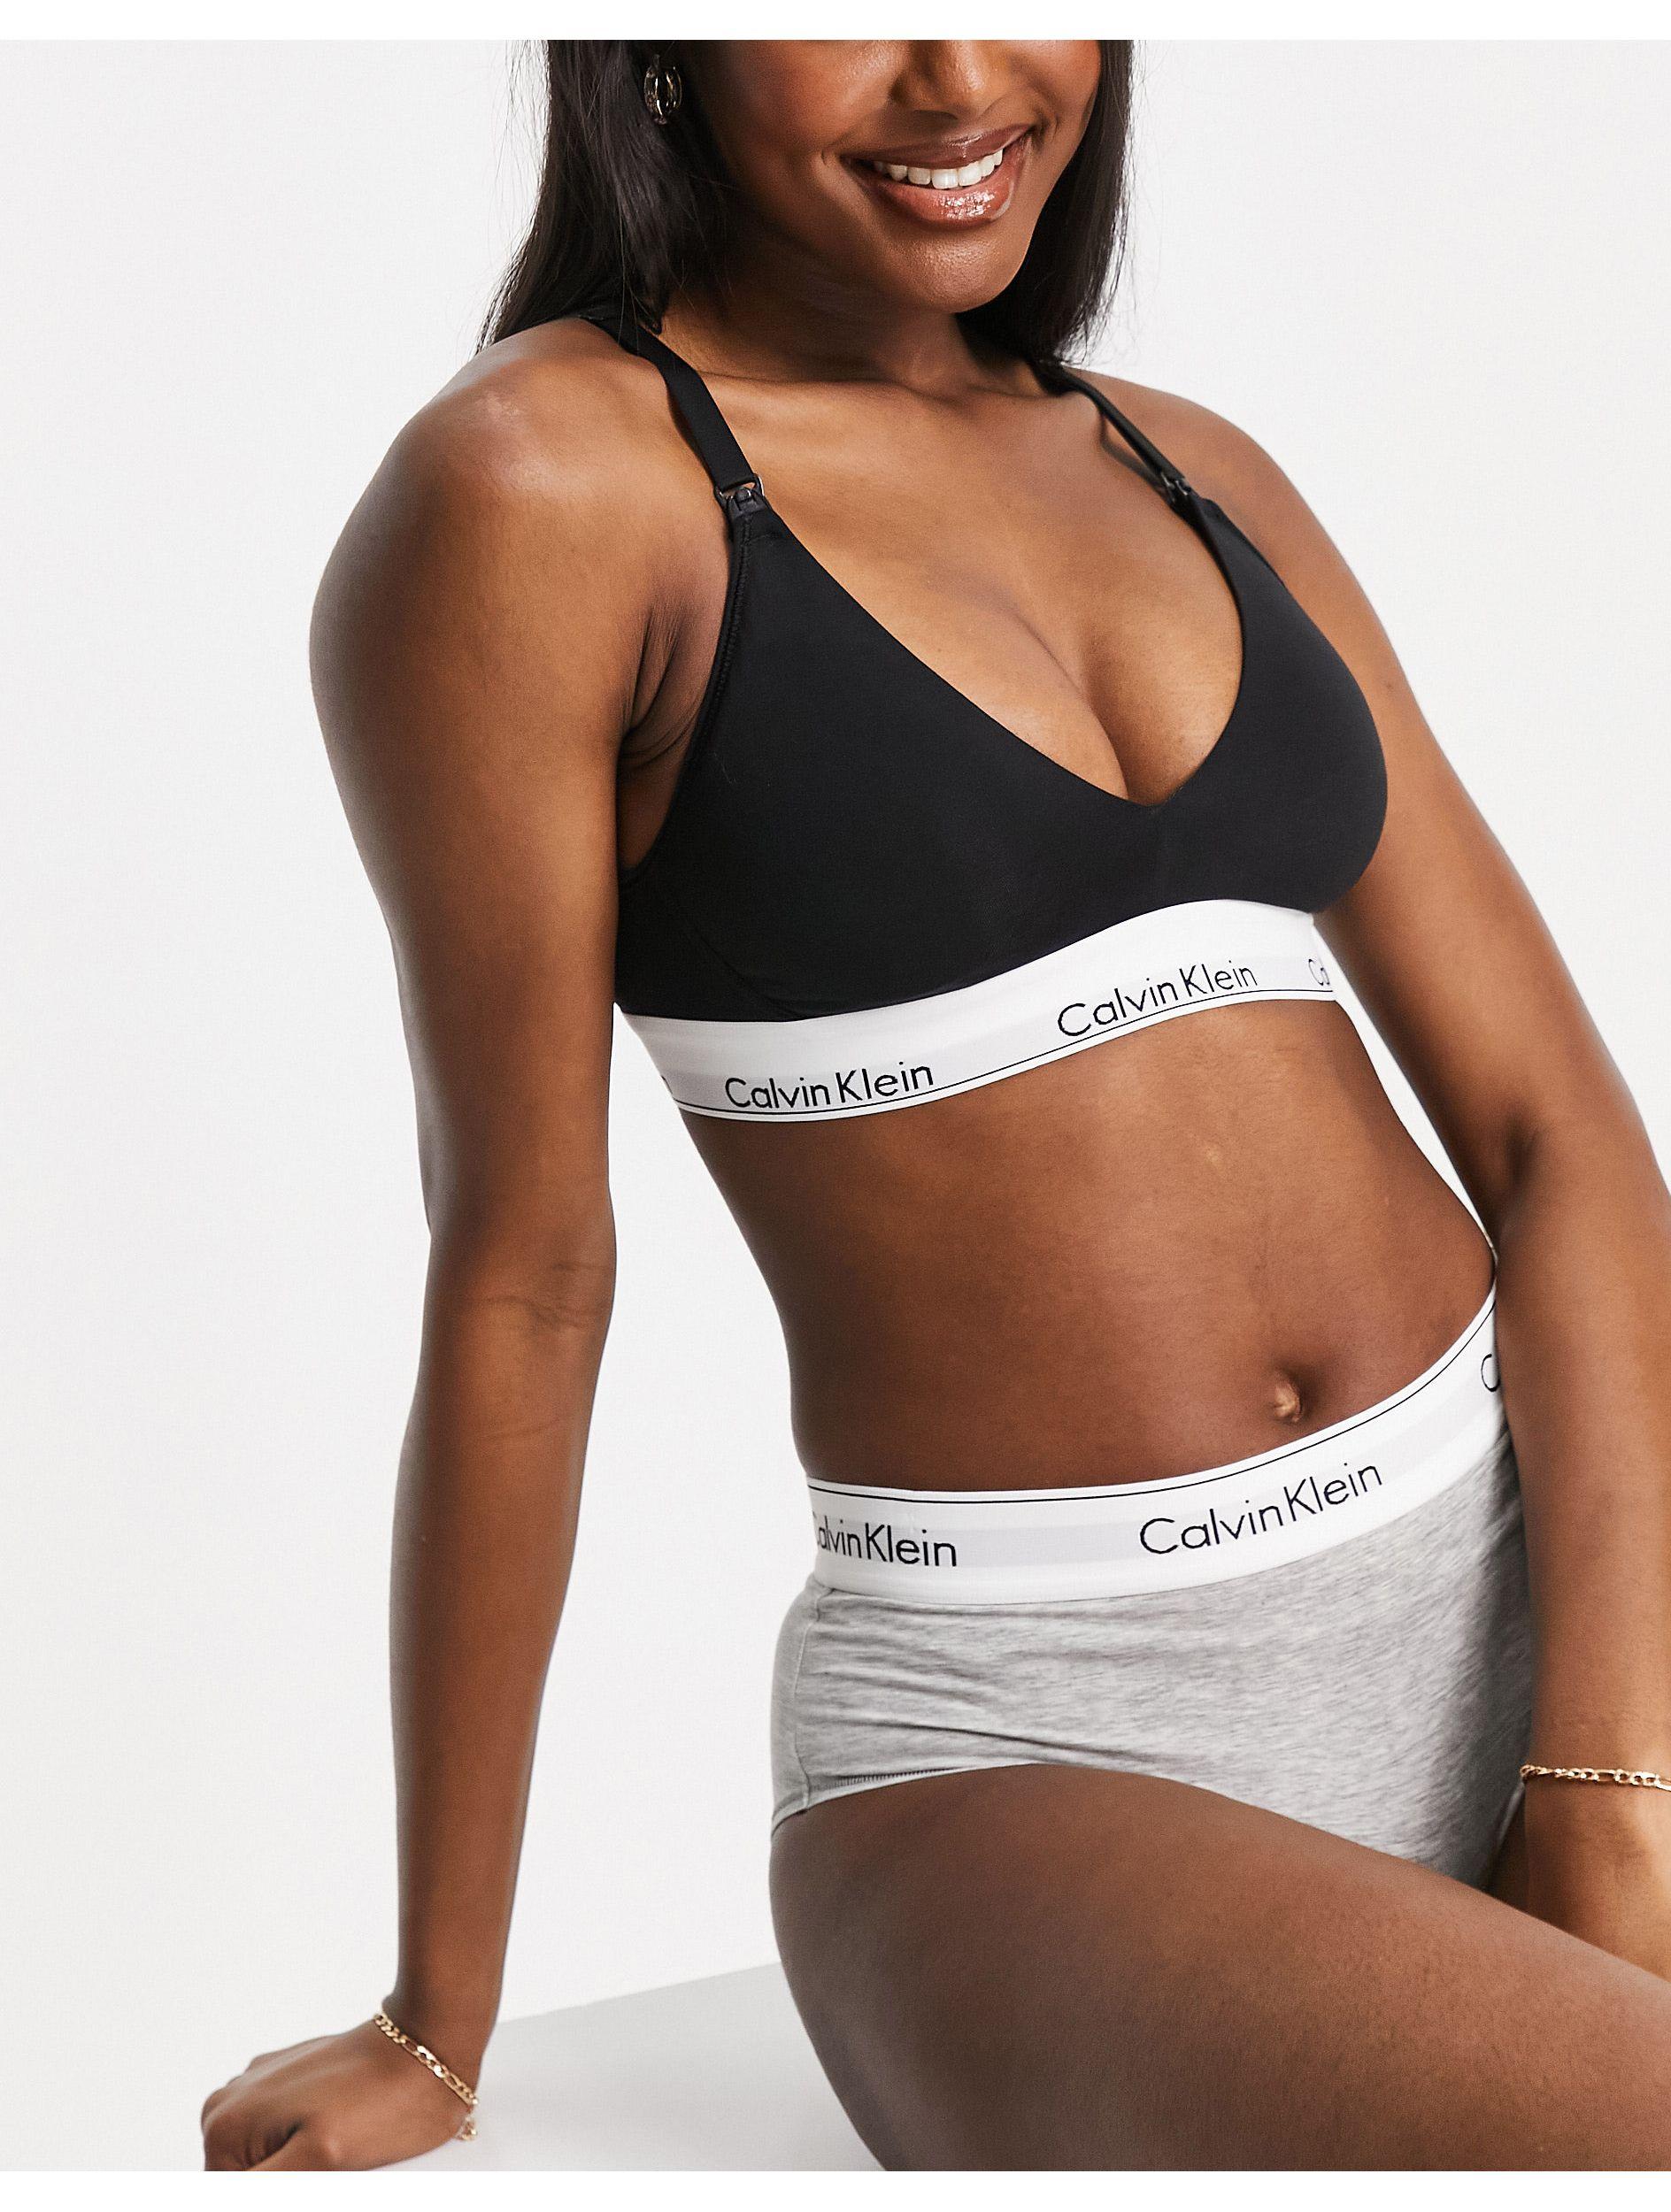 Calvin Klein Nursing Bra, Women's Fashion, New Undergarments